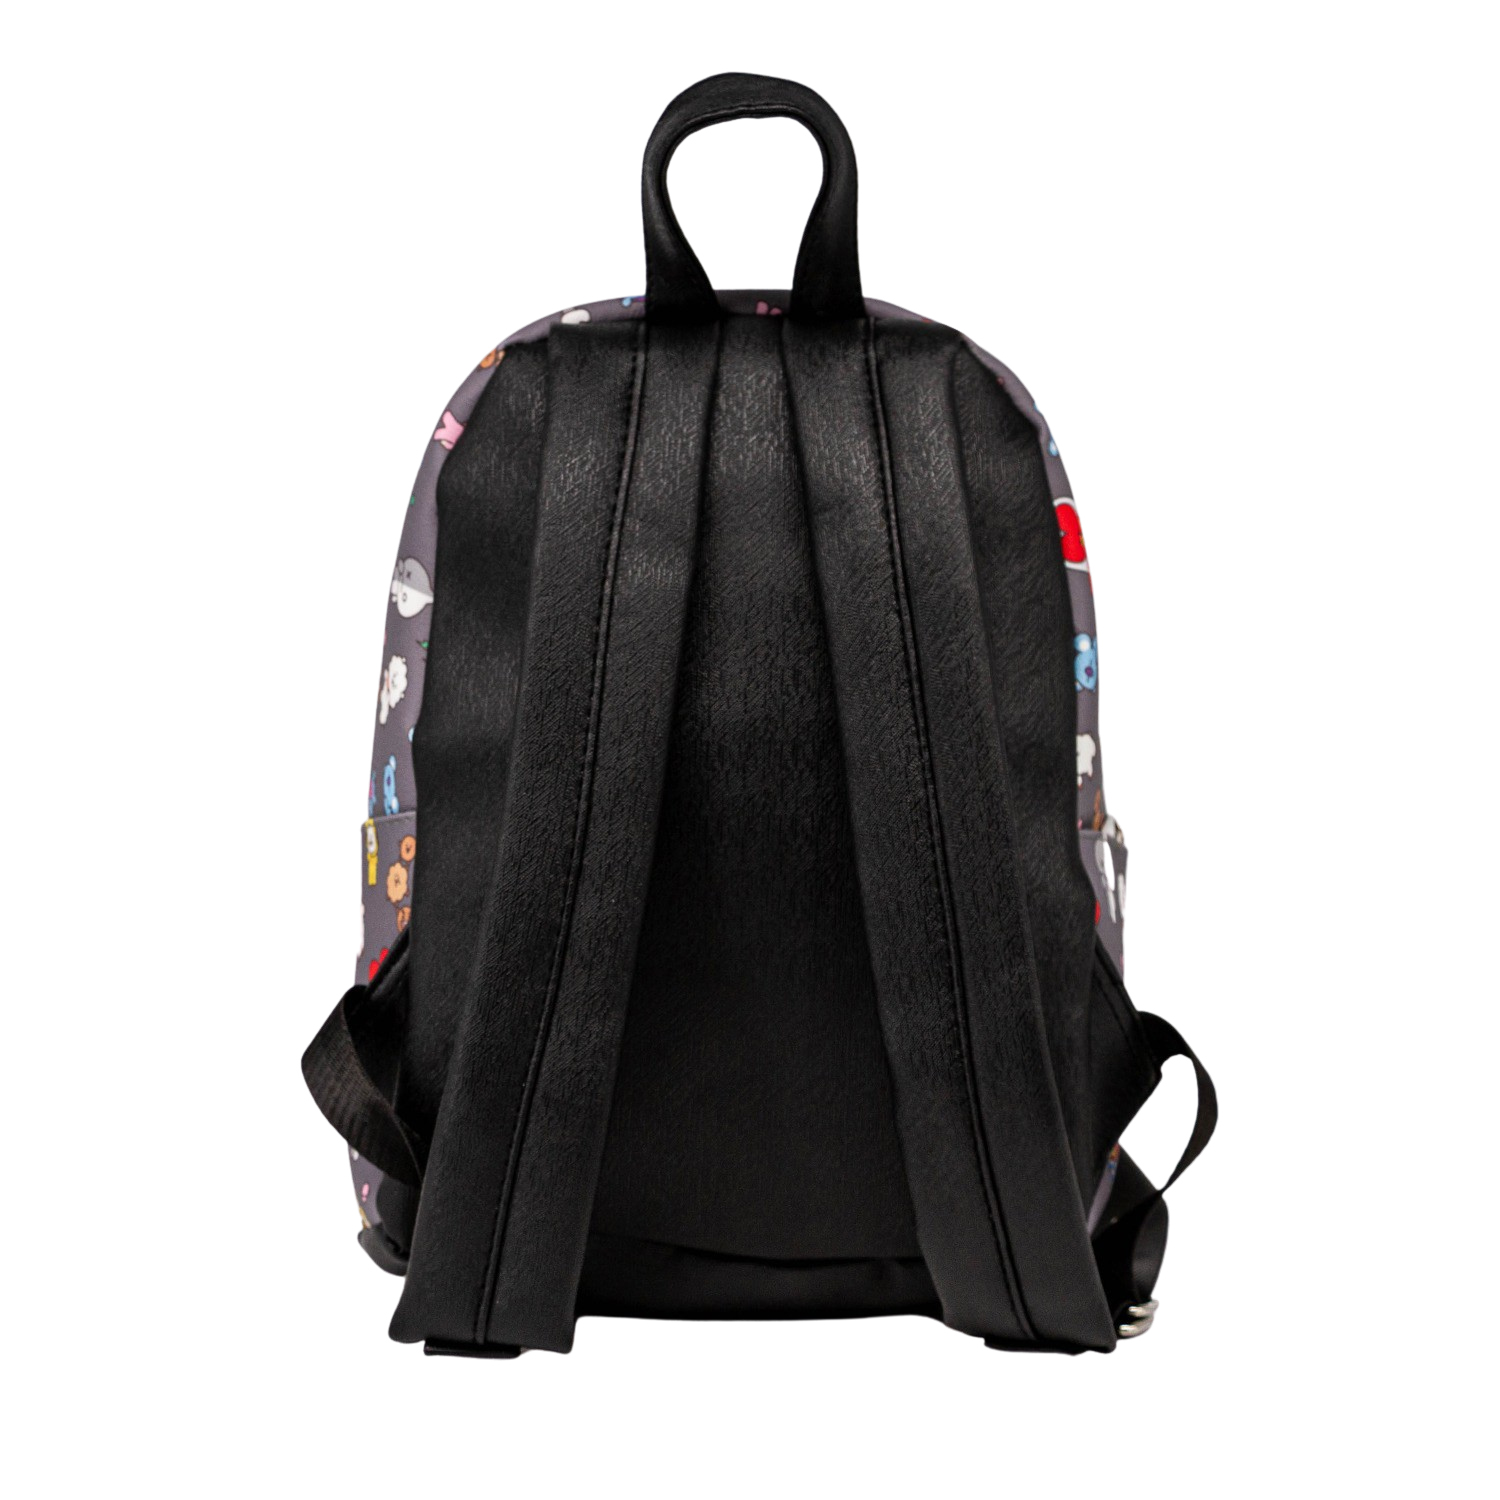 Fashion backpack S. BT21 Universtar